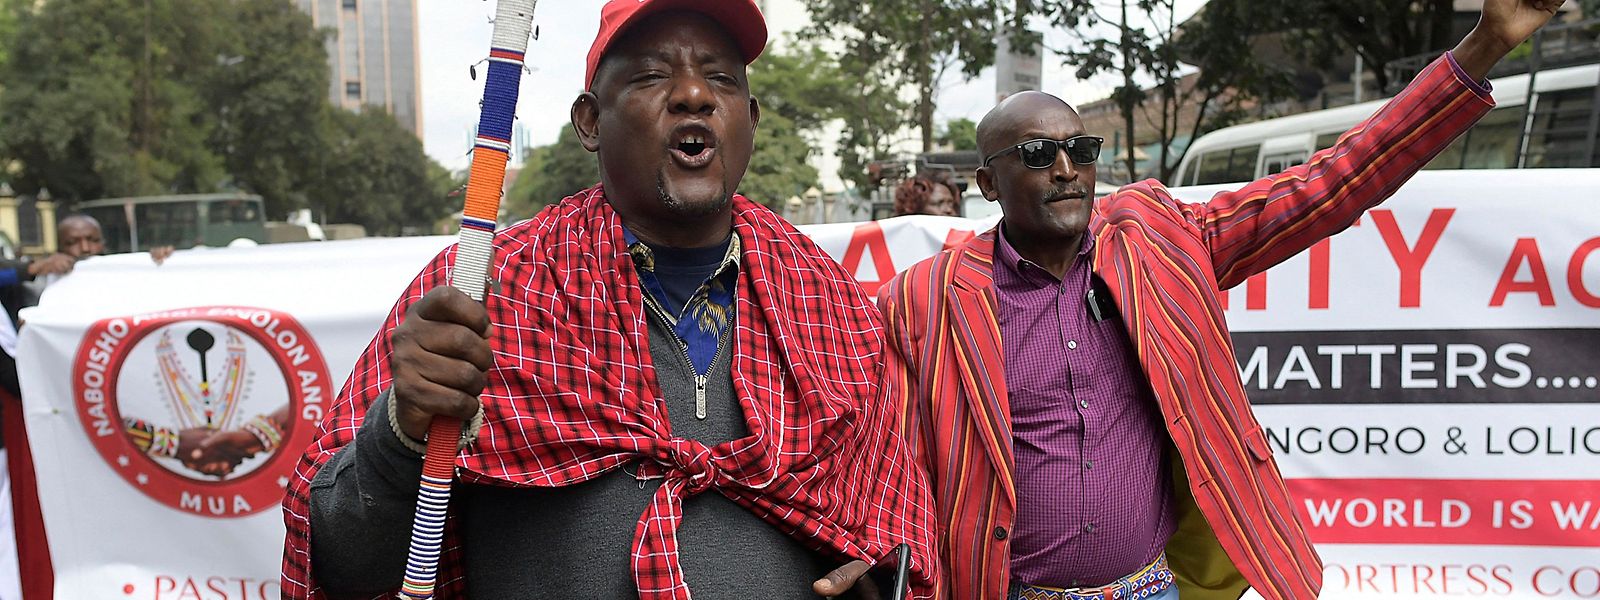 Maasai-Männer organisieren sich, um gegen die in ihren Augen unrechtmäßige Vertreibung zu demonstrieren. 